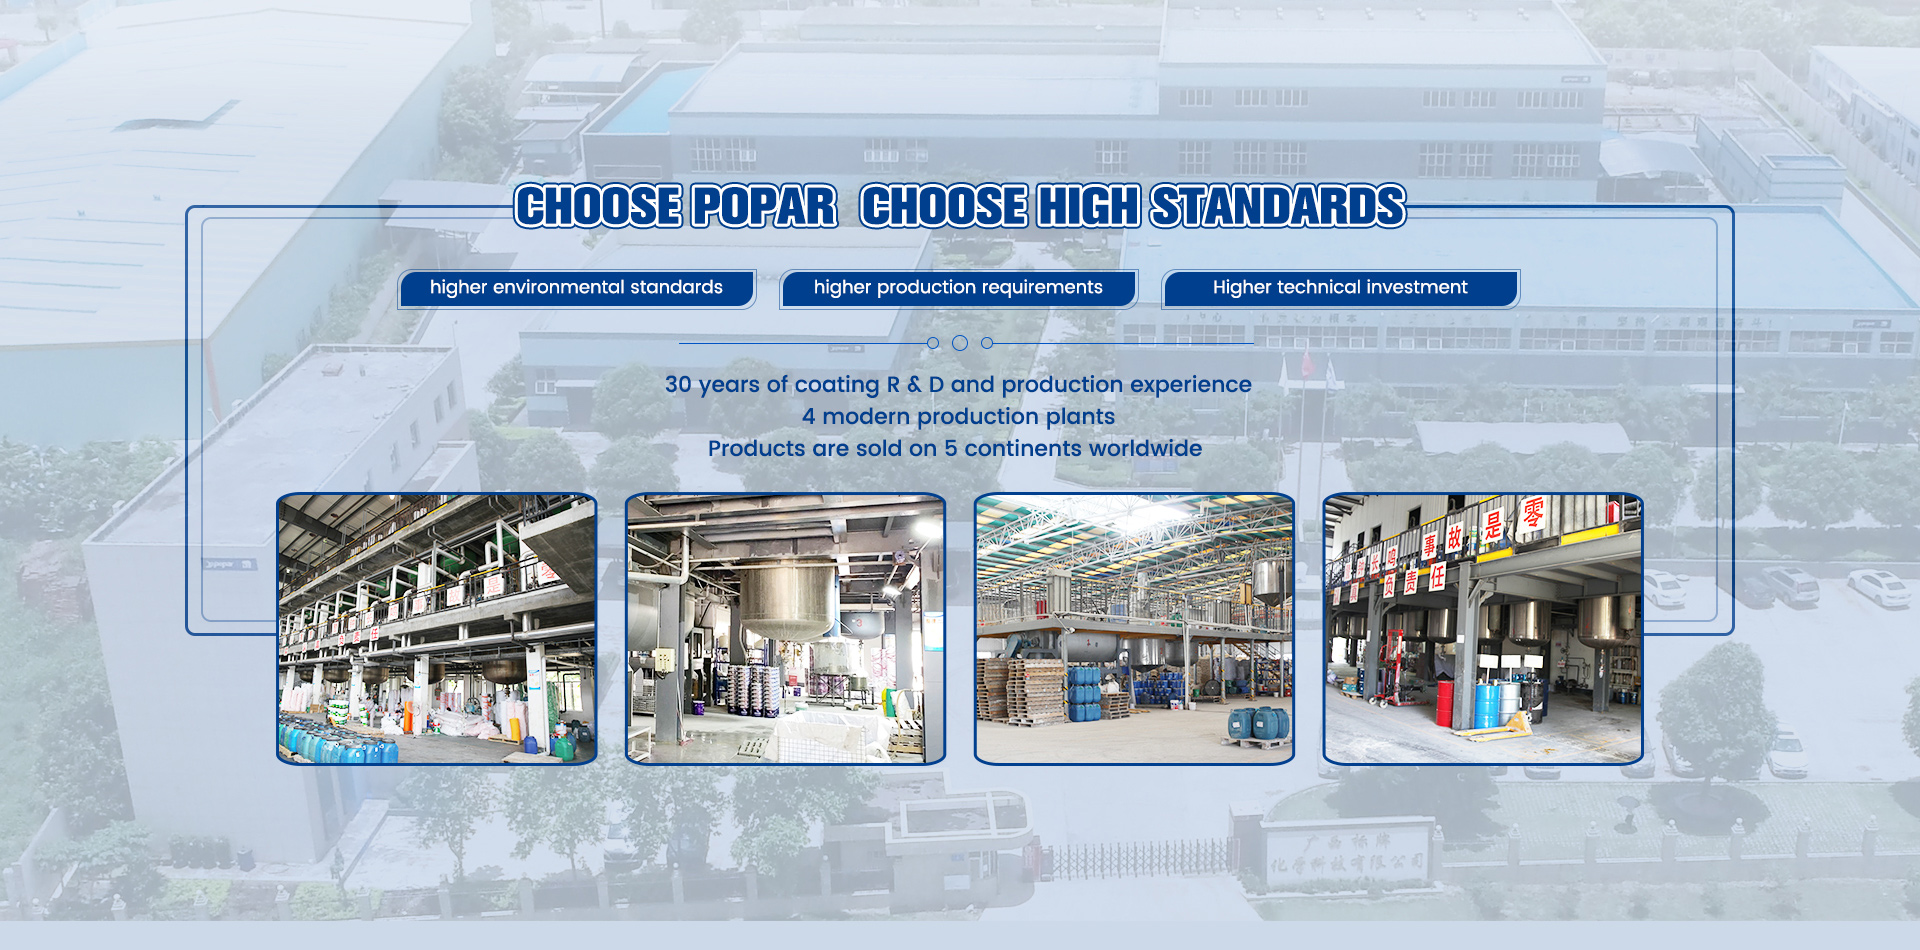 Choose Ropar Choose High Standards